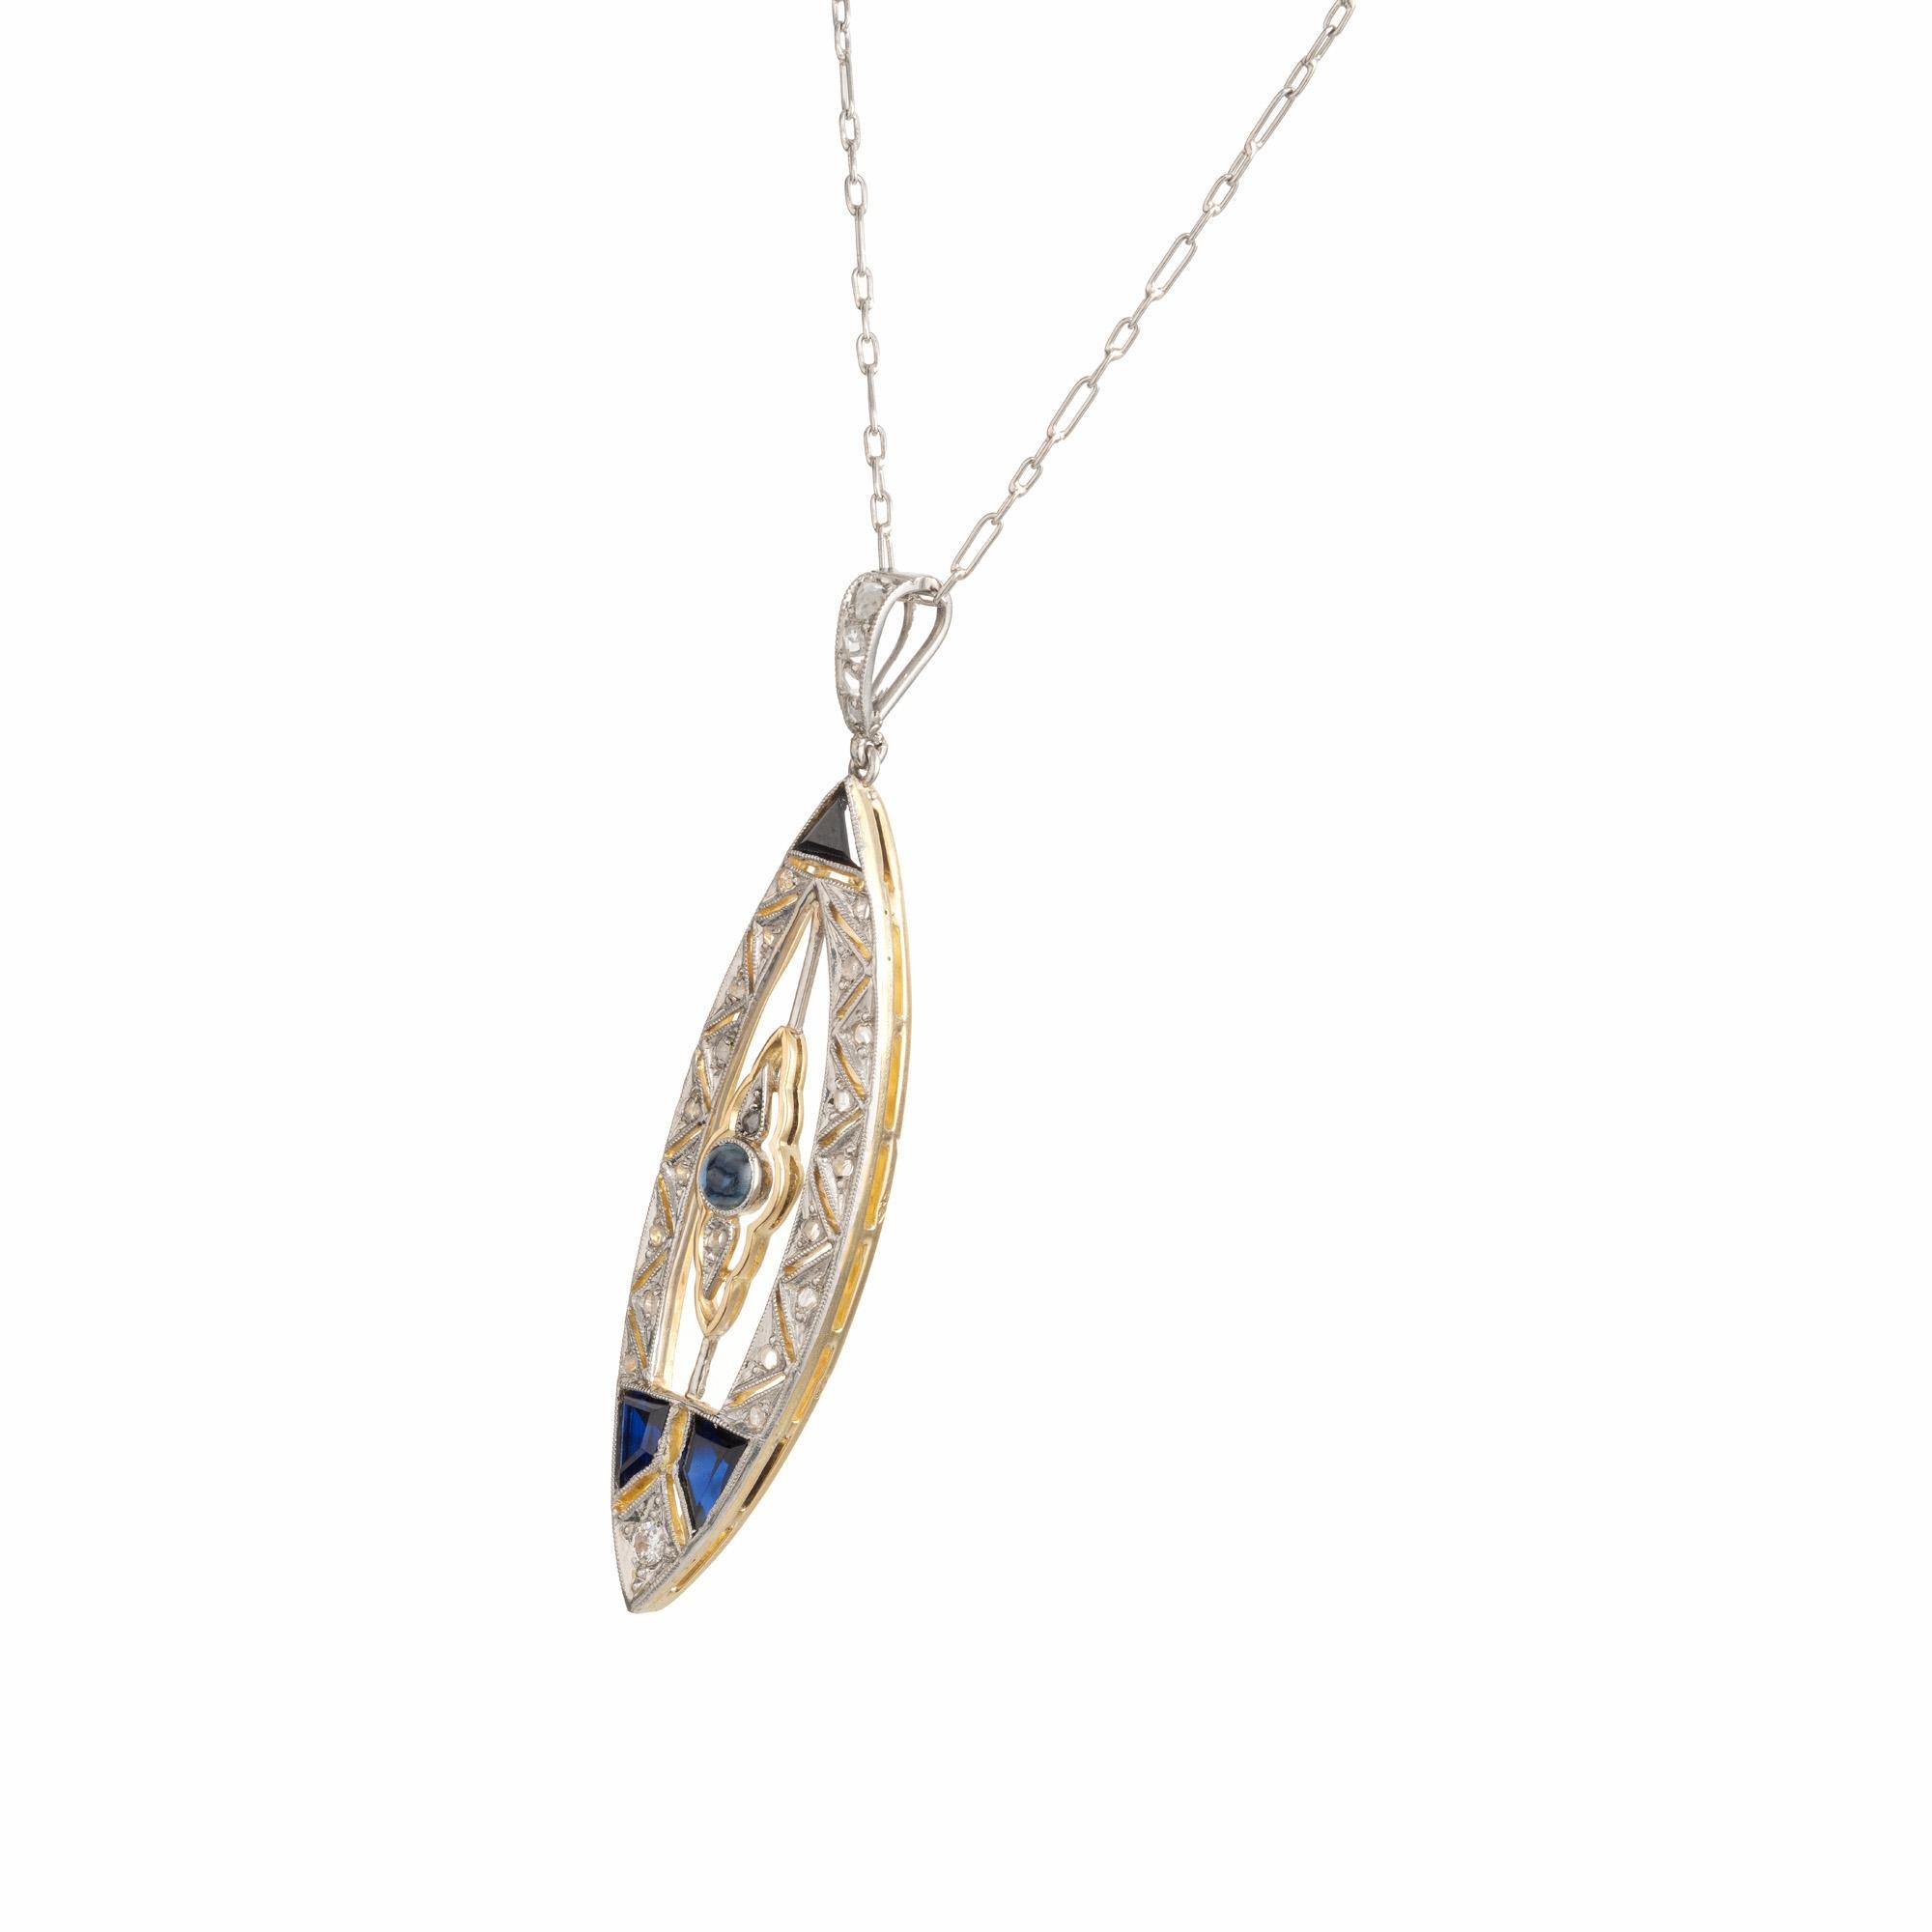 Schöne handgefertigte Halskette mit Saphiren und Diamanten aus den späten 1800er Jahren. Der zentrale Edelstein ist ein natürlicher Cabochon-Saphir, der von 25 Diamanten im Rosen- und Rundschliff akzentuiert wird. Außerdem gibt es 3 mehrförmige